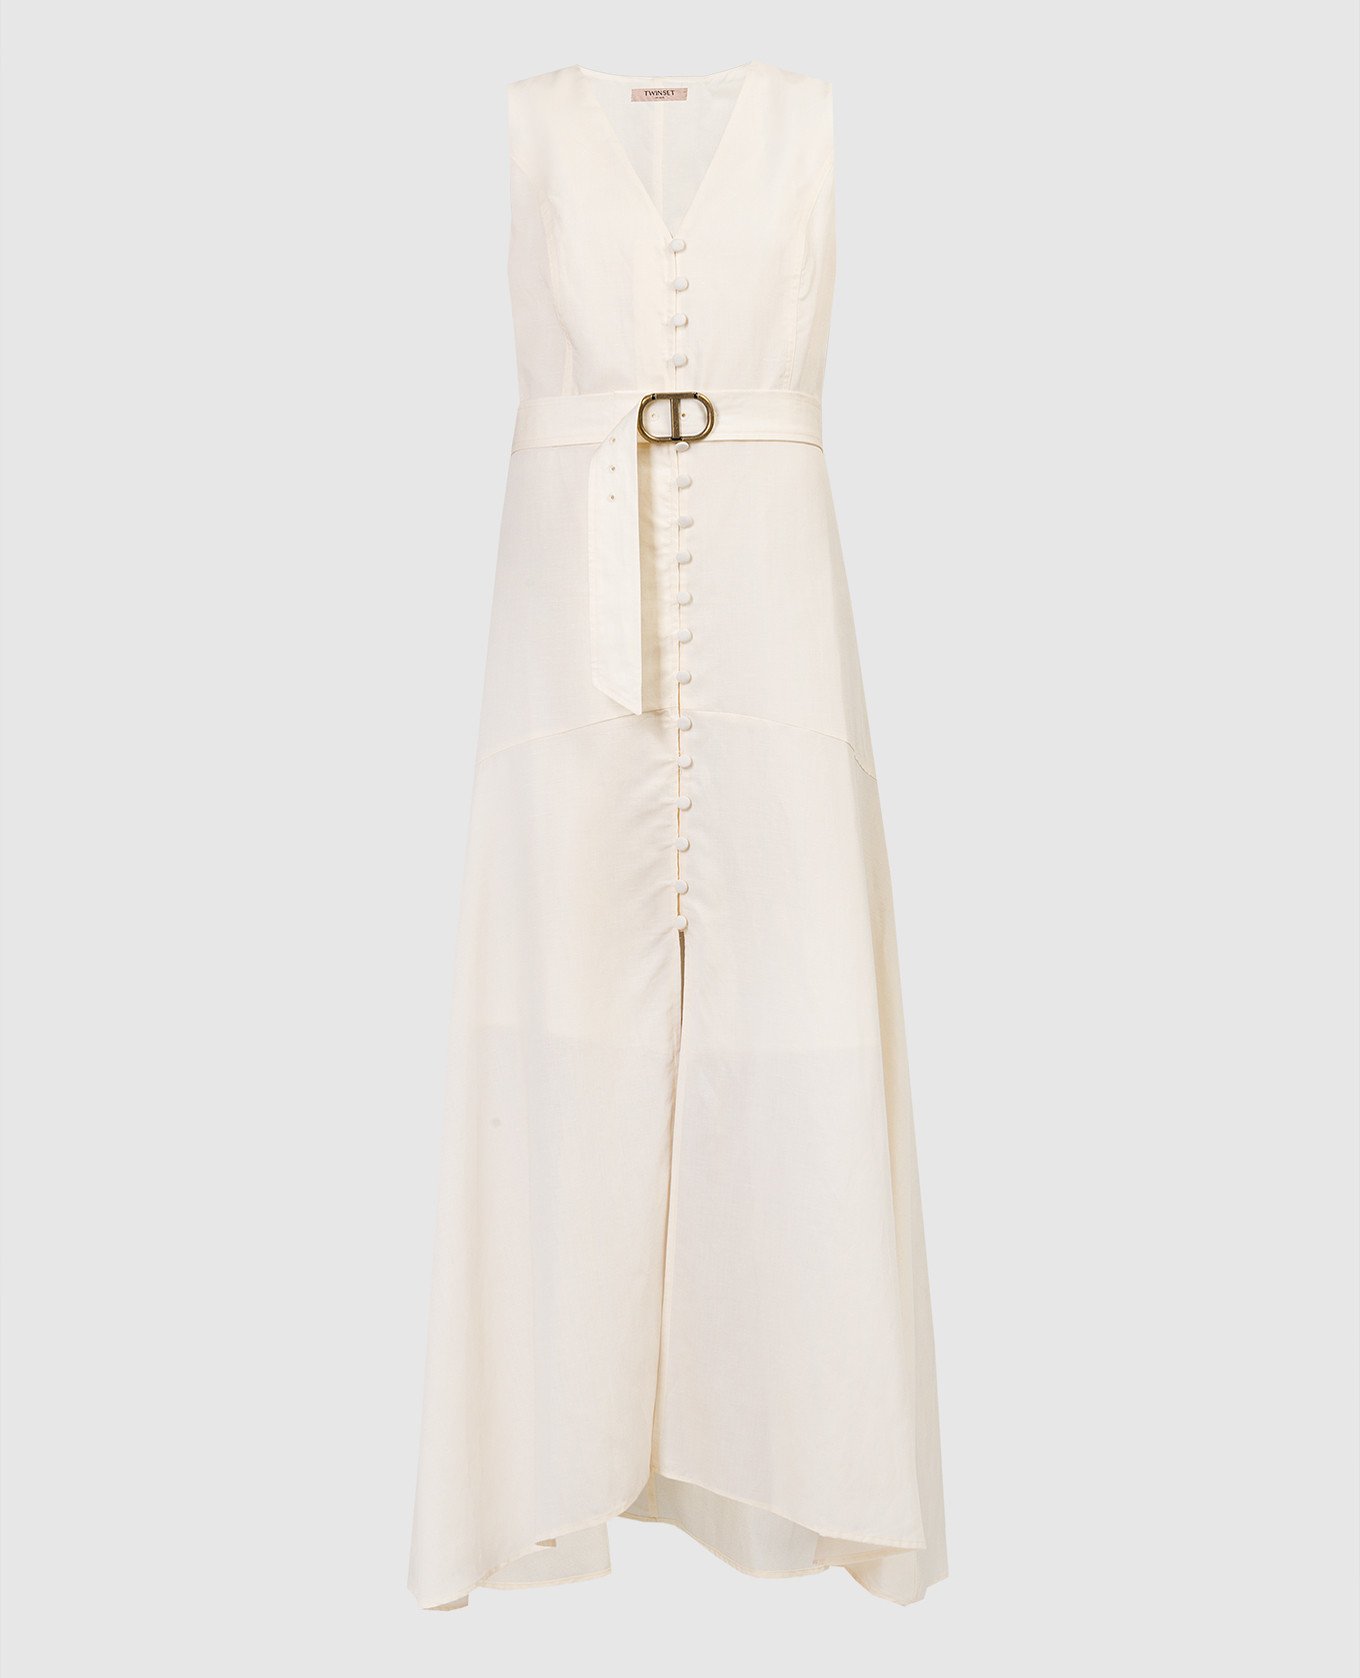 Beige linen dress with a belt